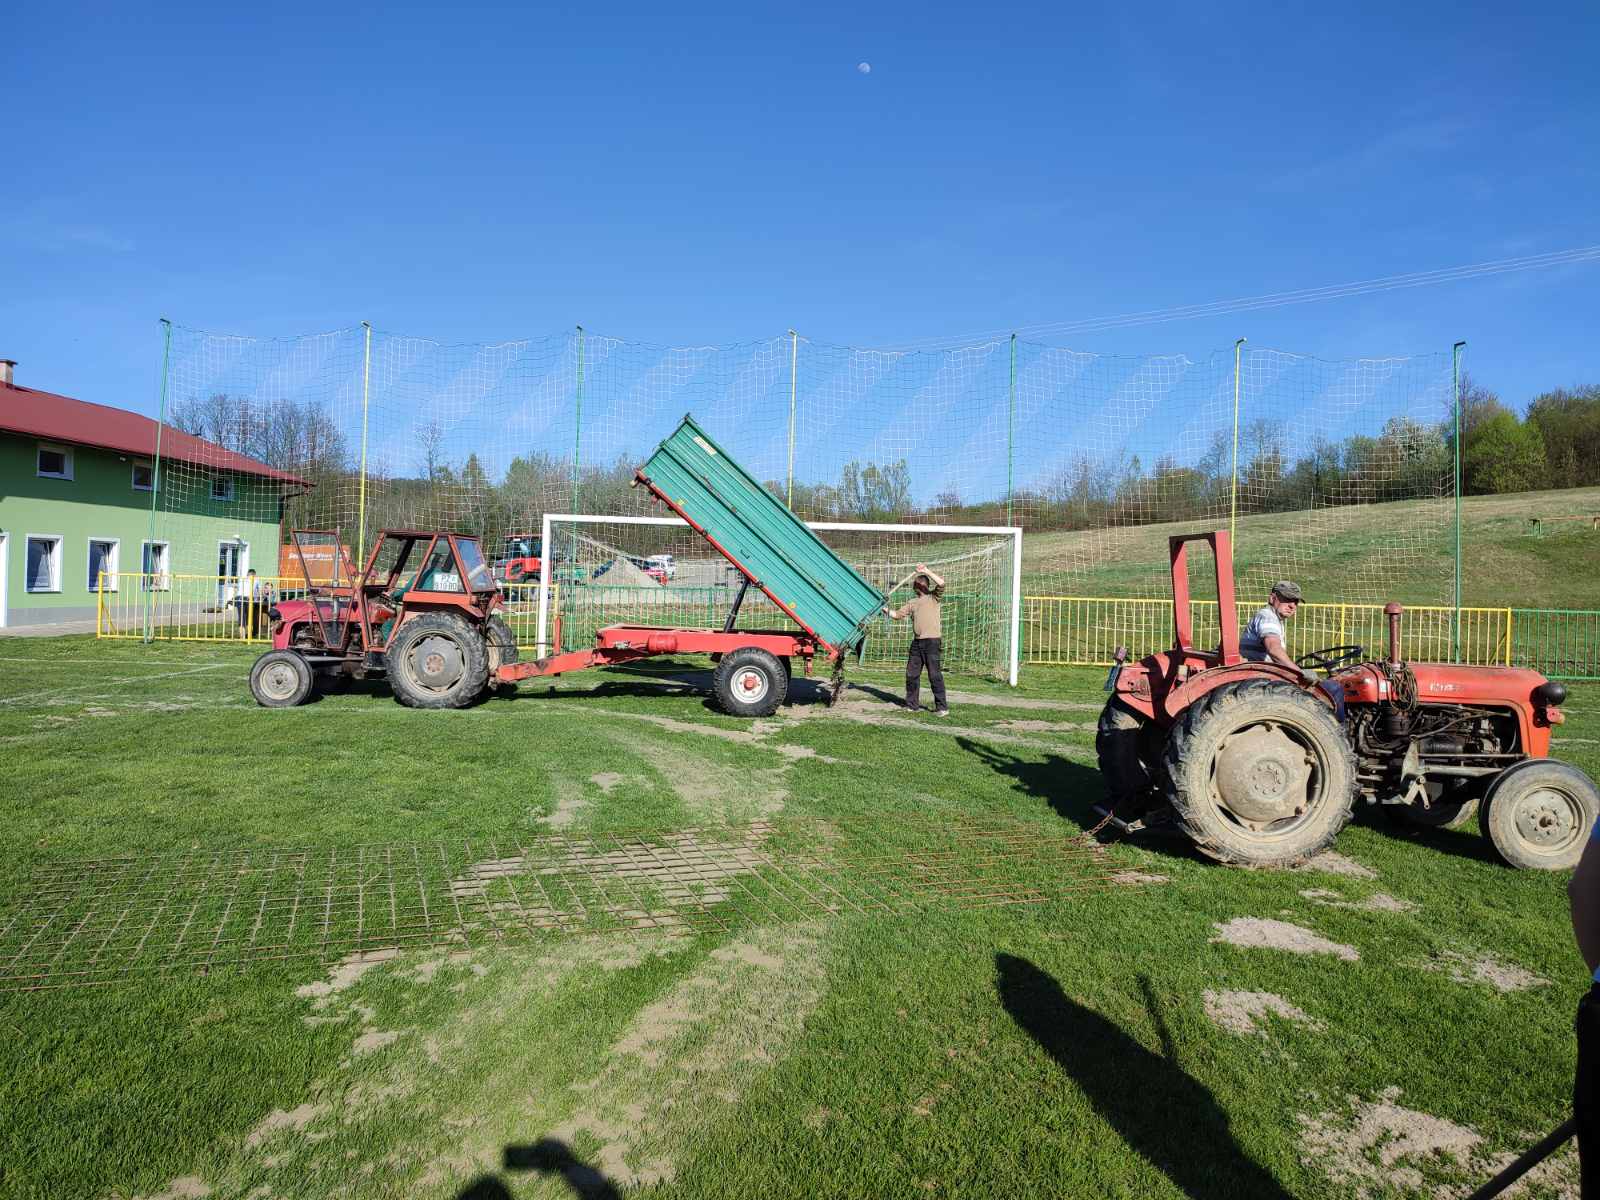 Požega.eu | Nogometaši Graničara bacanjem pijeska pripremaju igralište za nastupe /FOTO/